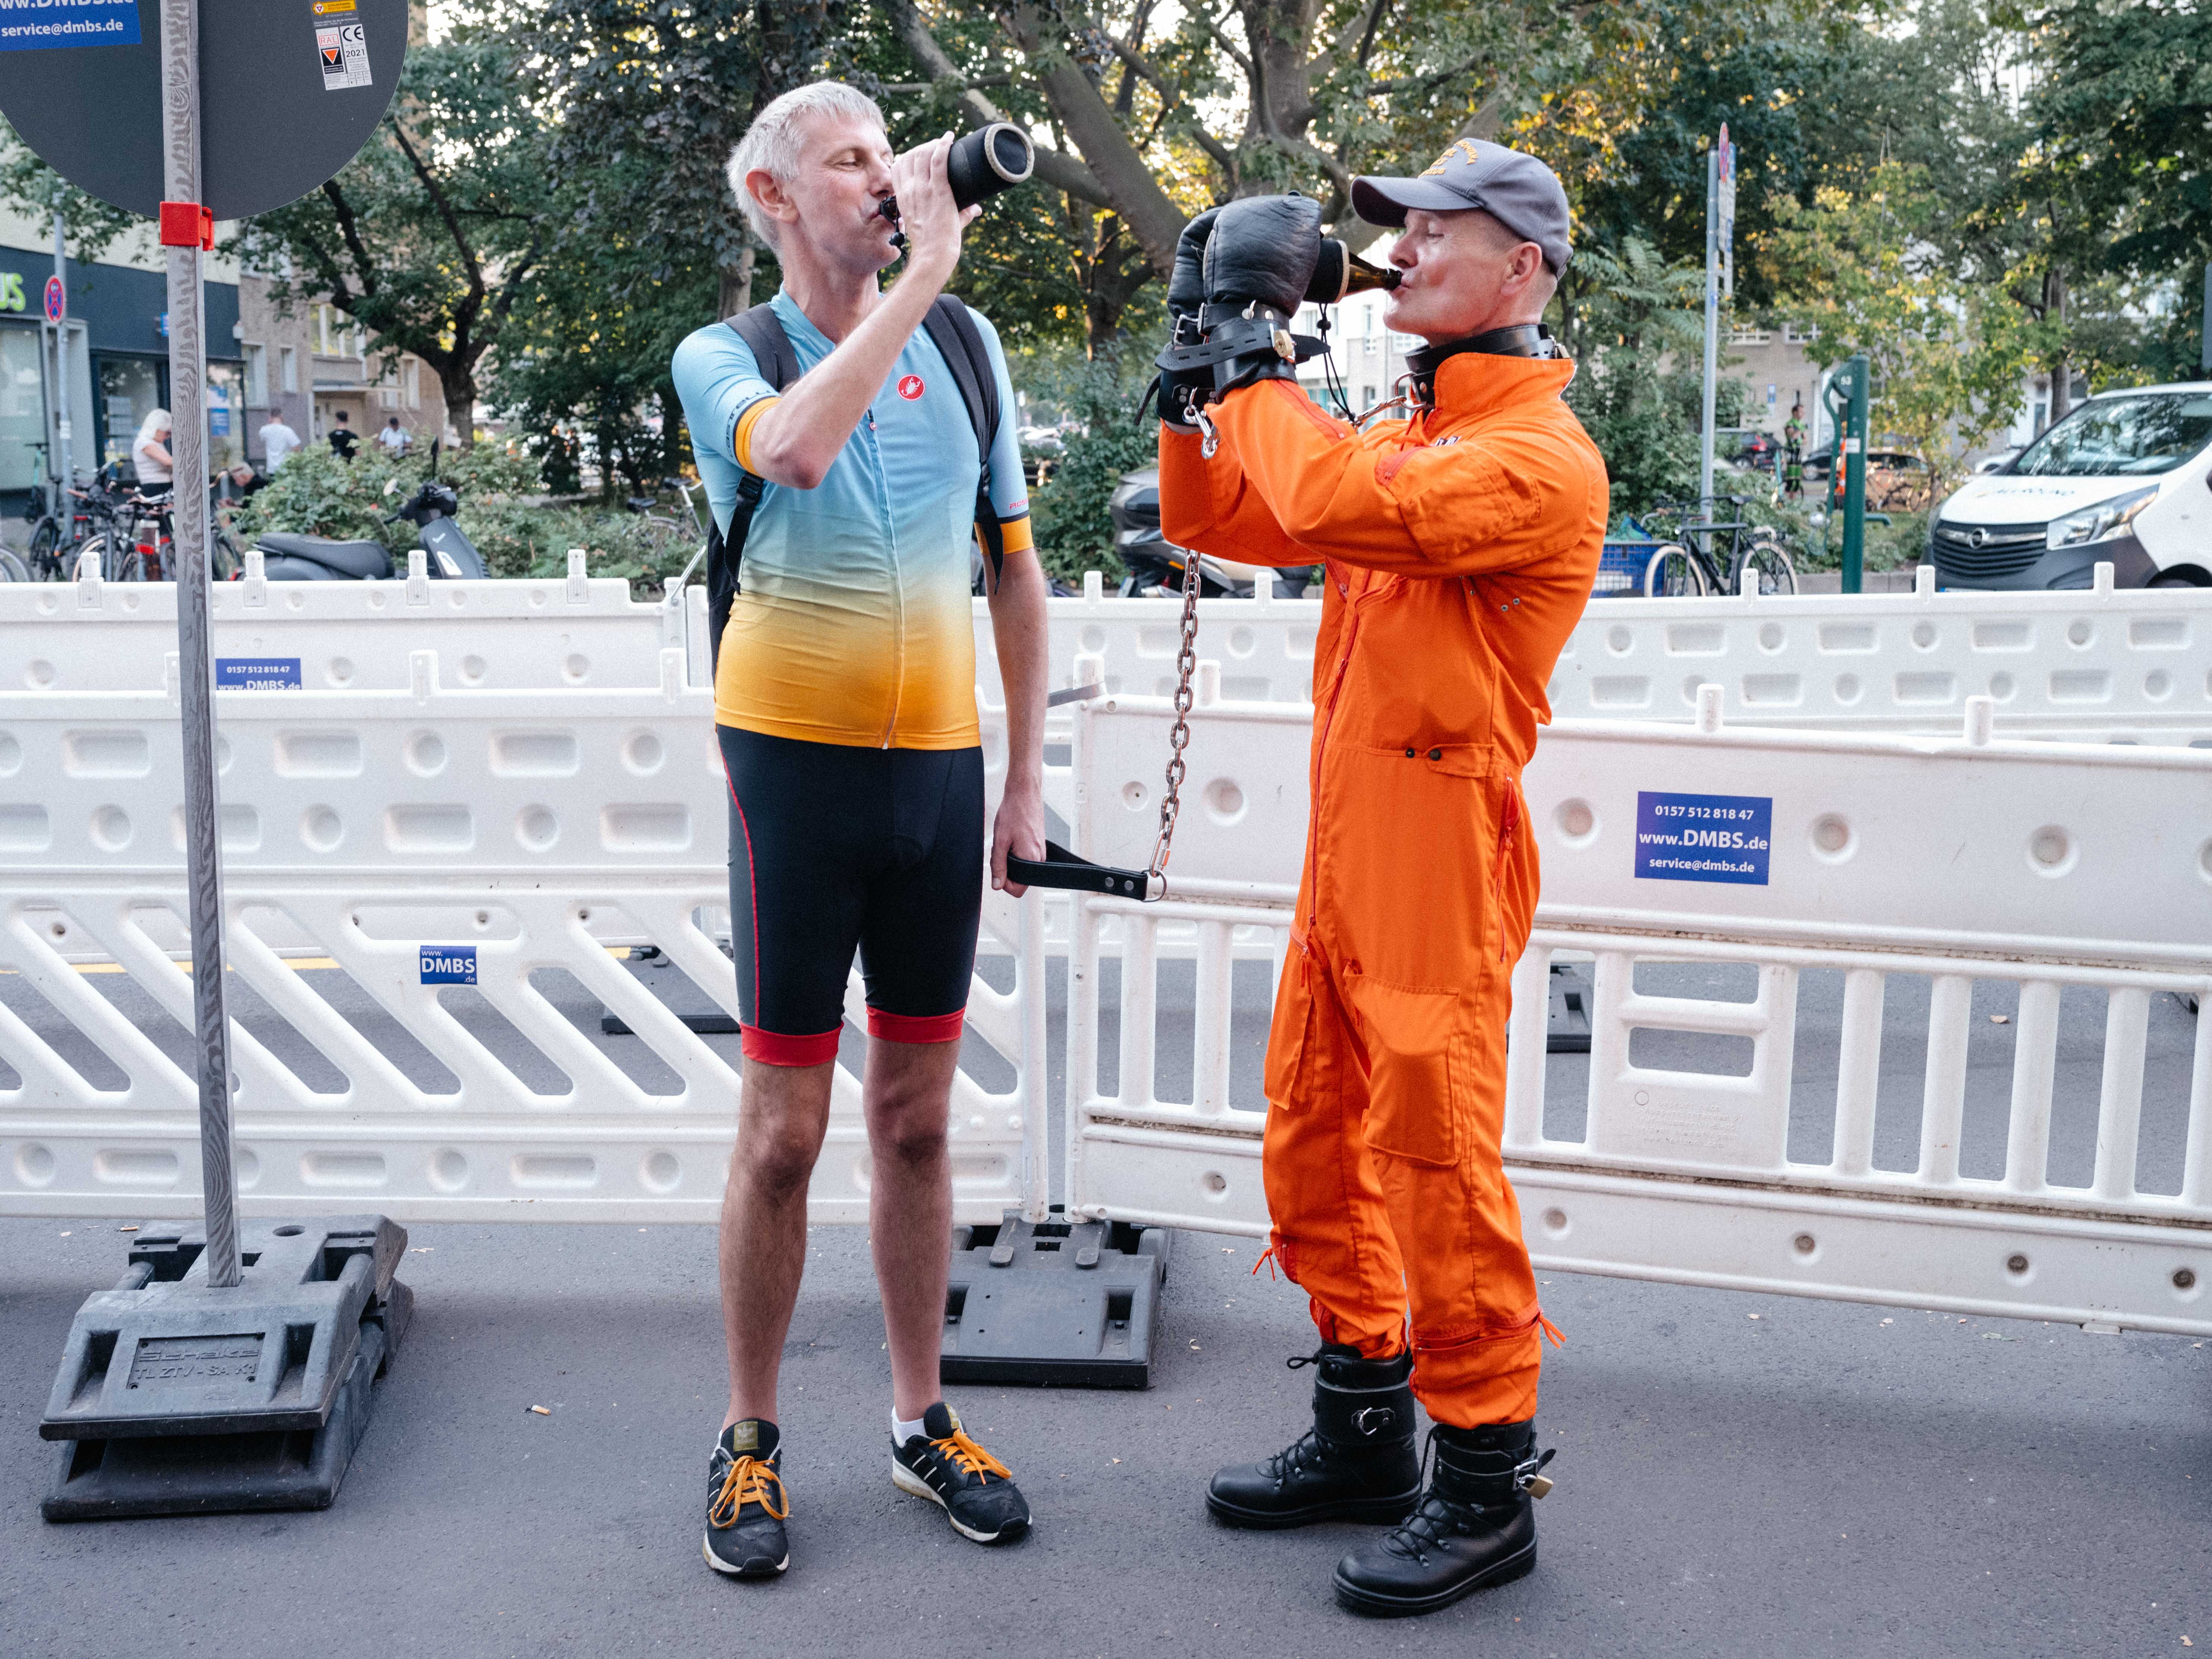 Marc trägt bei einem Fetisch-Event ein Rennradoutfit und führt an einer Leine einen Mann, der einen orangefarbenen Overall und Handfesseln trägt